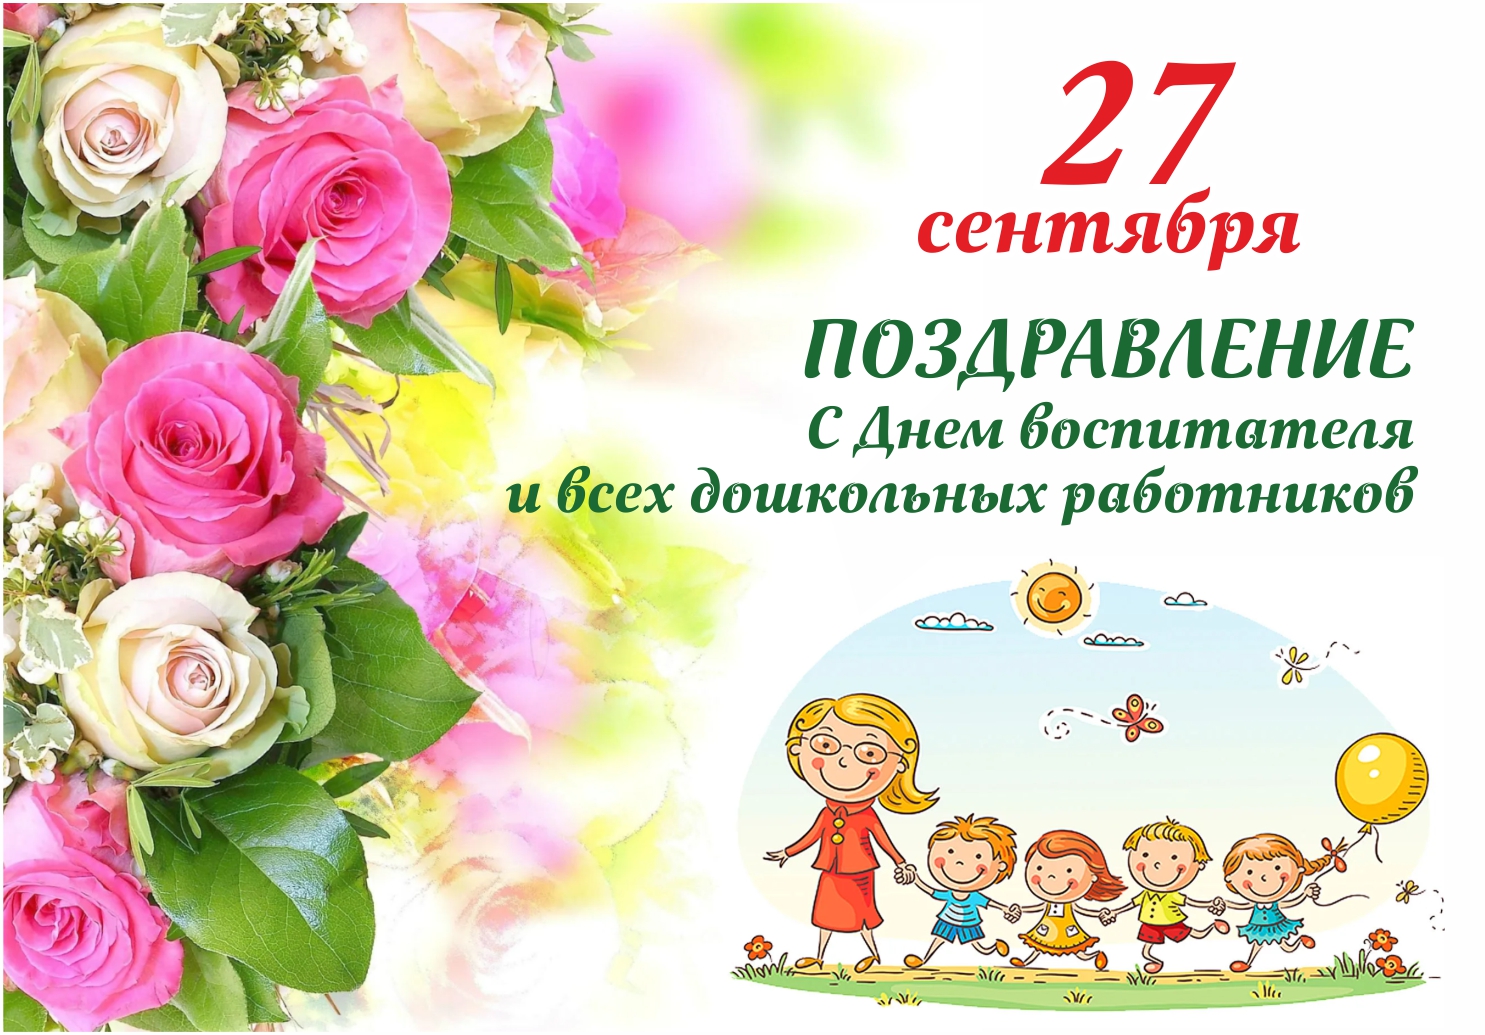 27 сентября в России отмечают День воспитателя и всех дошкольных работников.